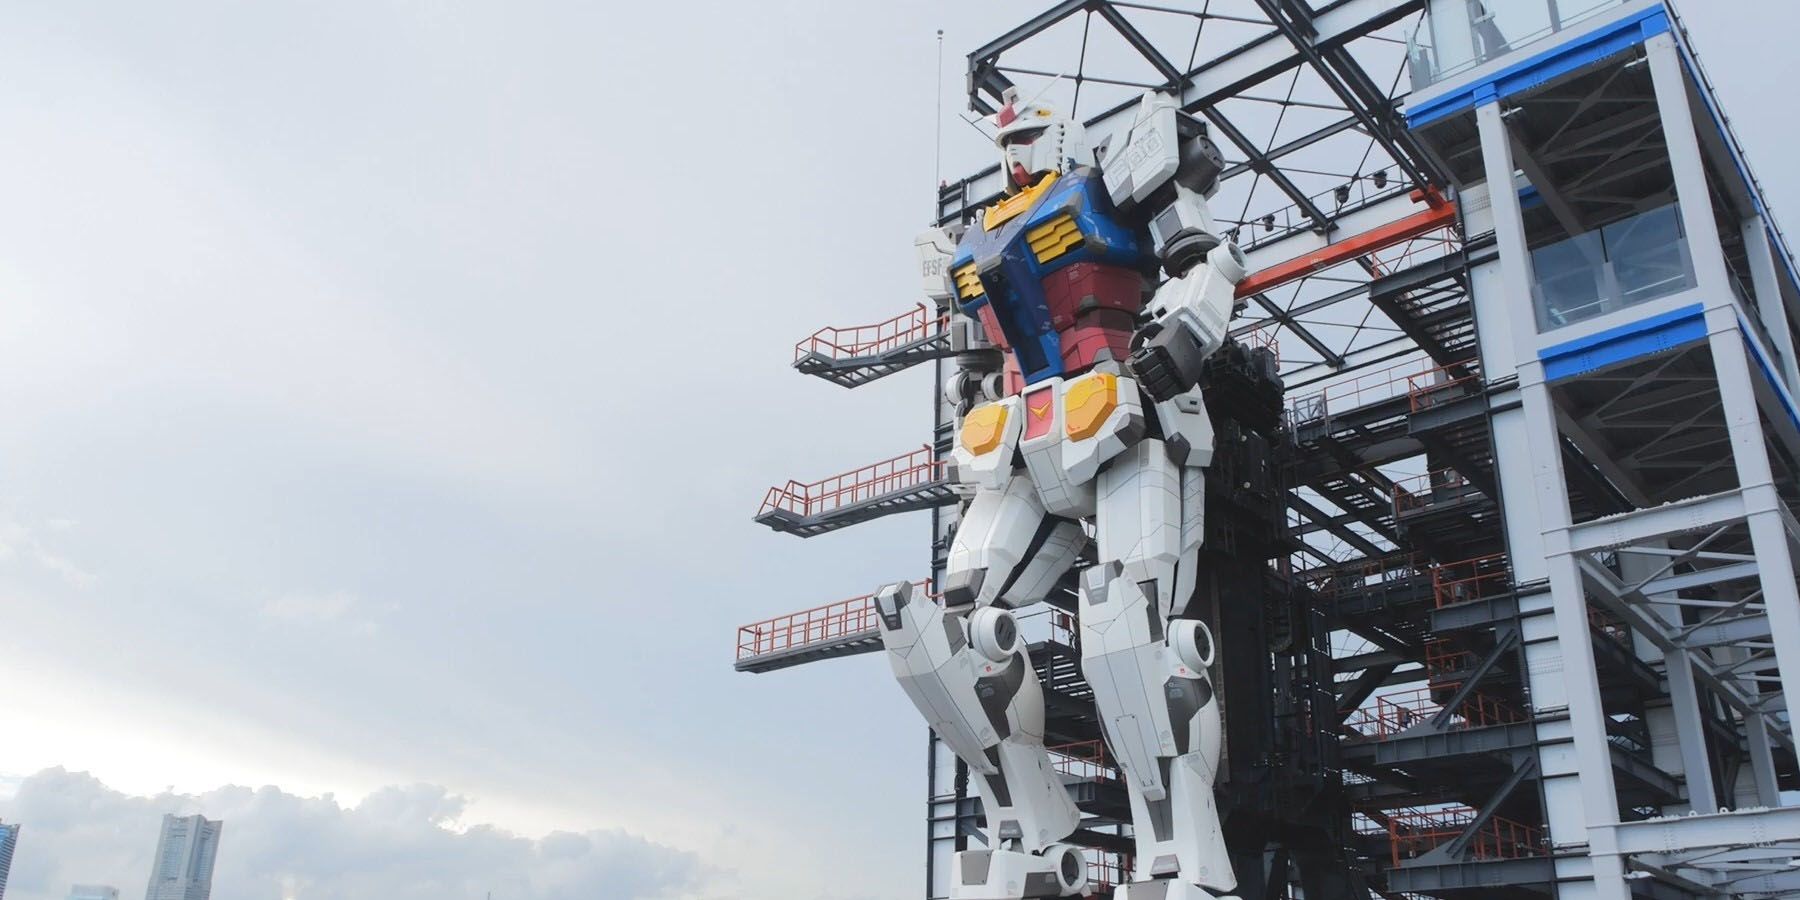 Gundam Factory Yokohama